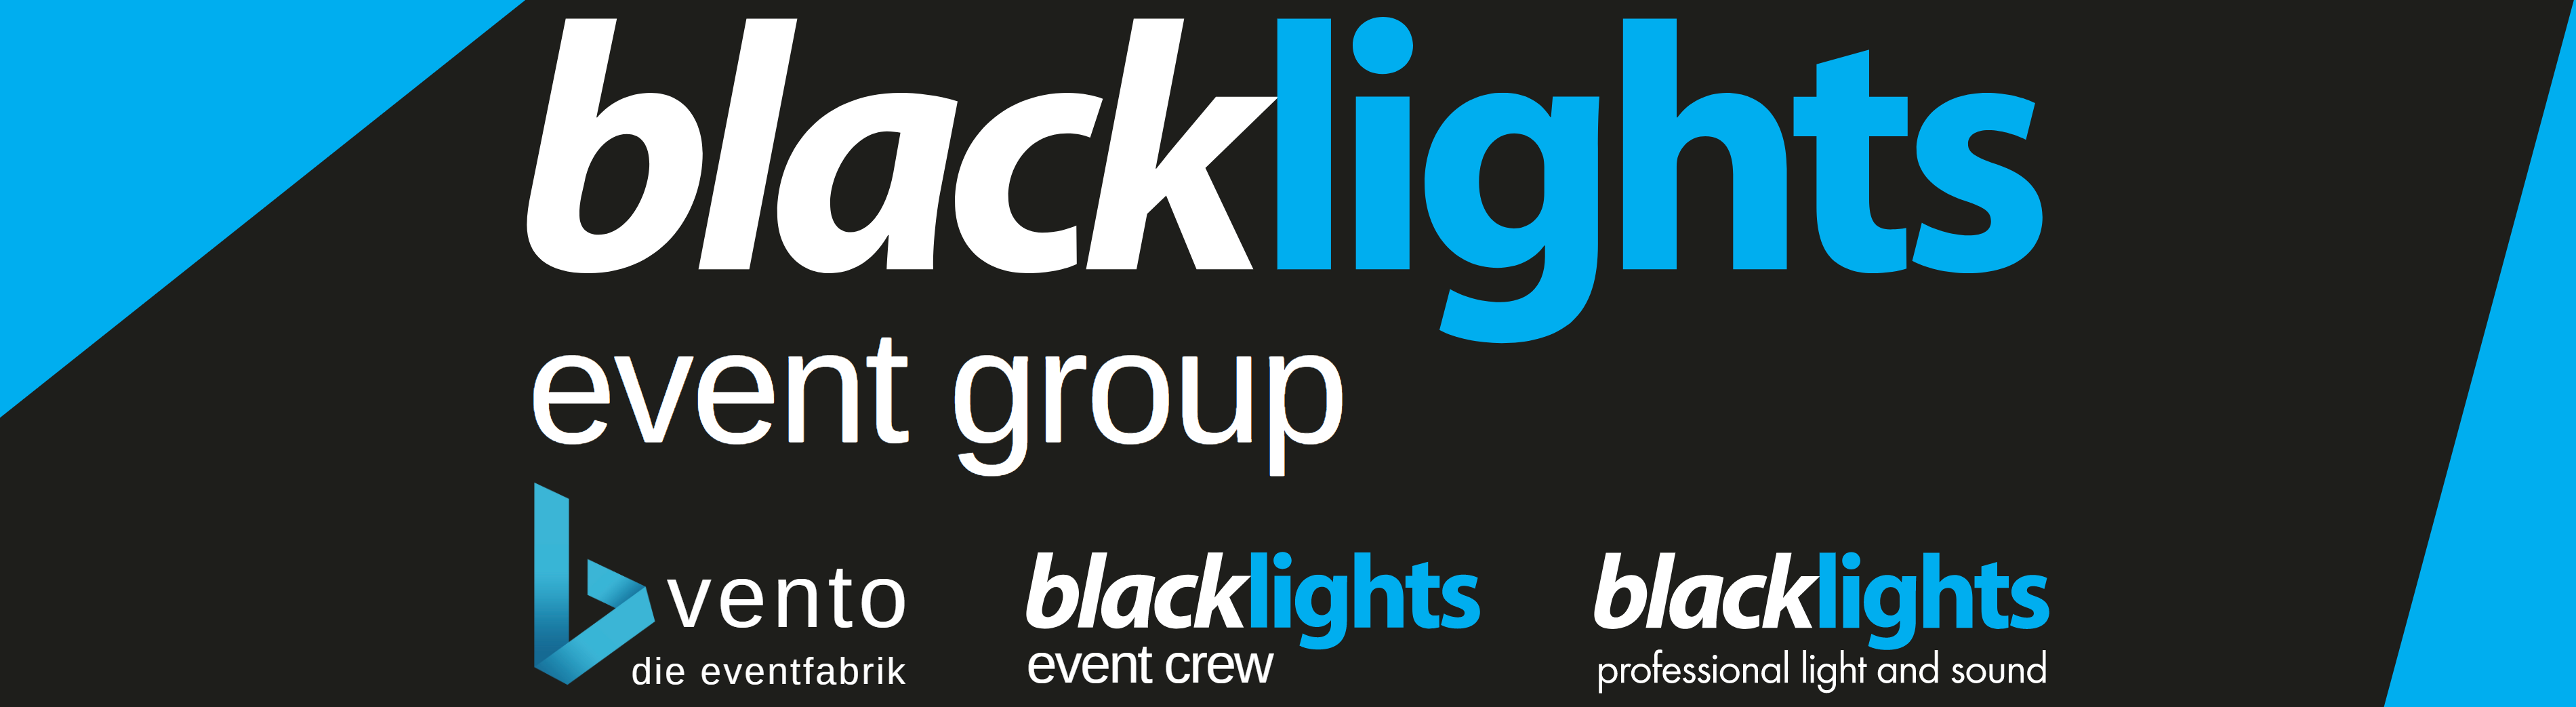 blacklights